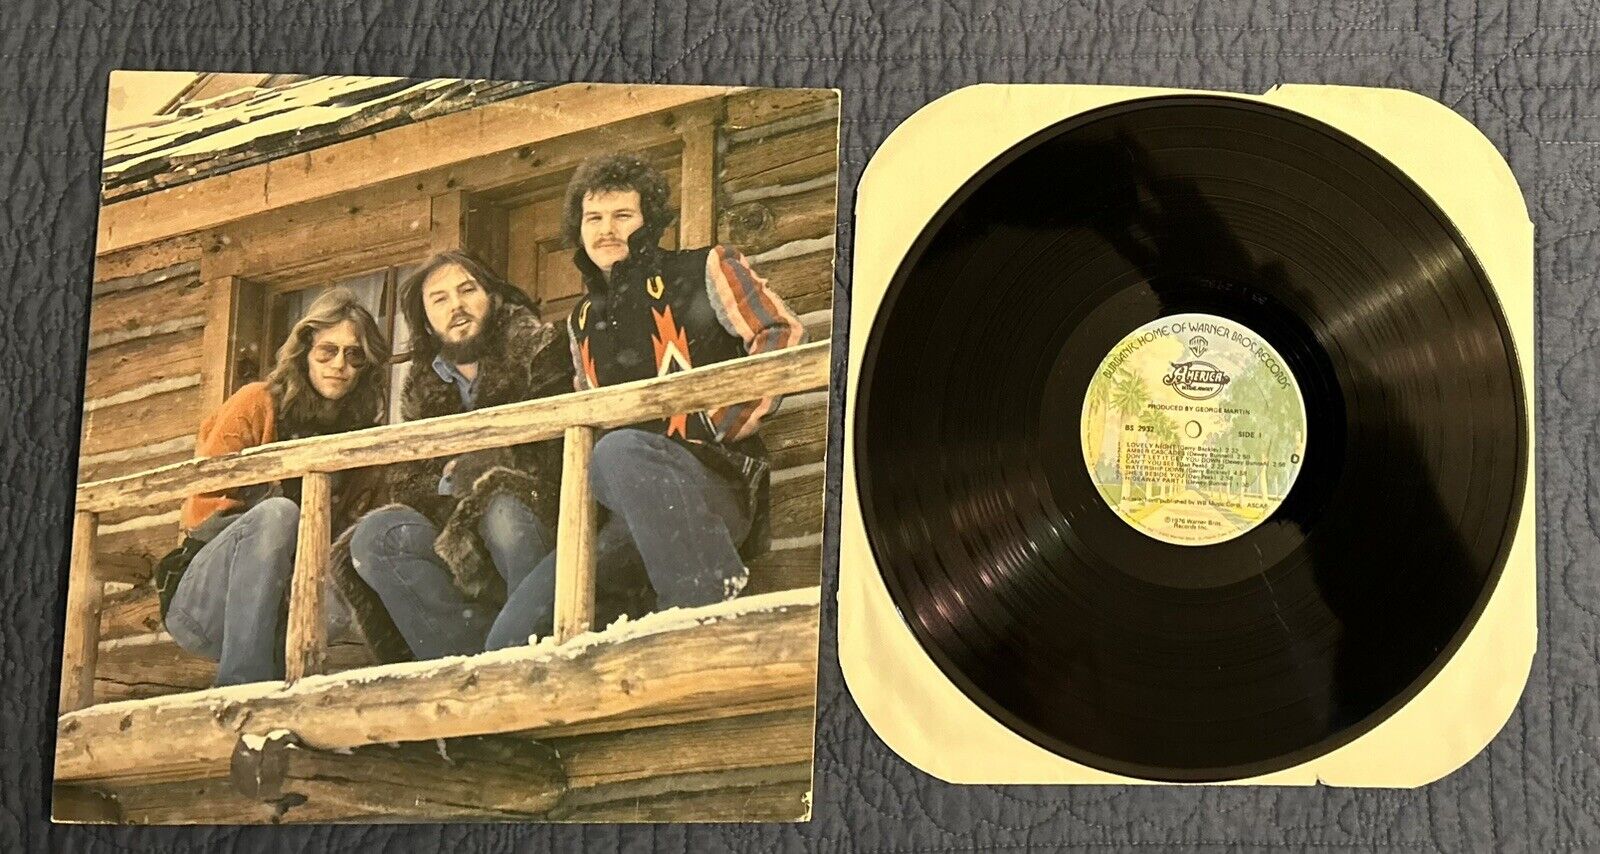 America Hideaway LP. WB #BS 2932. 1976 Release.